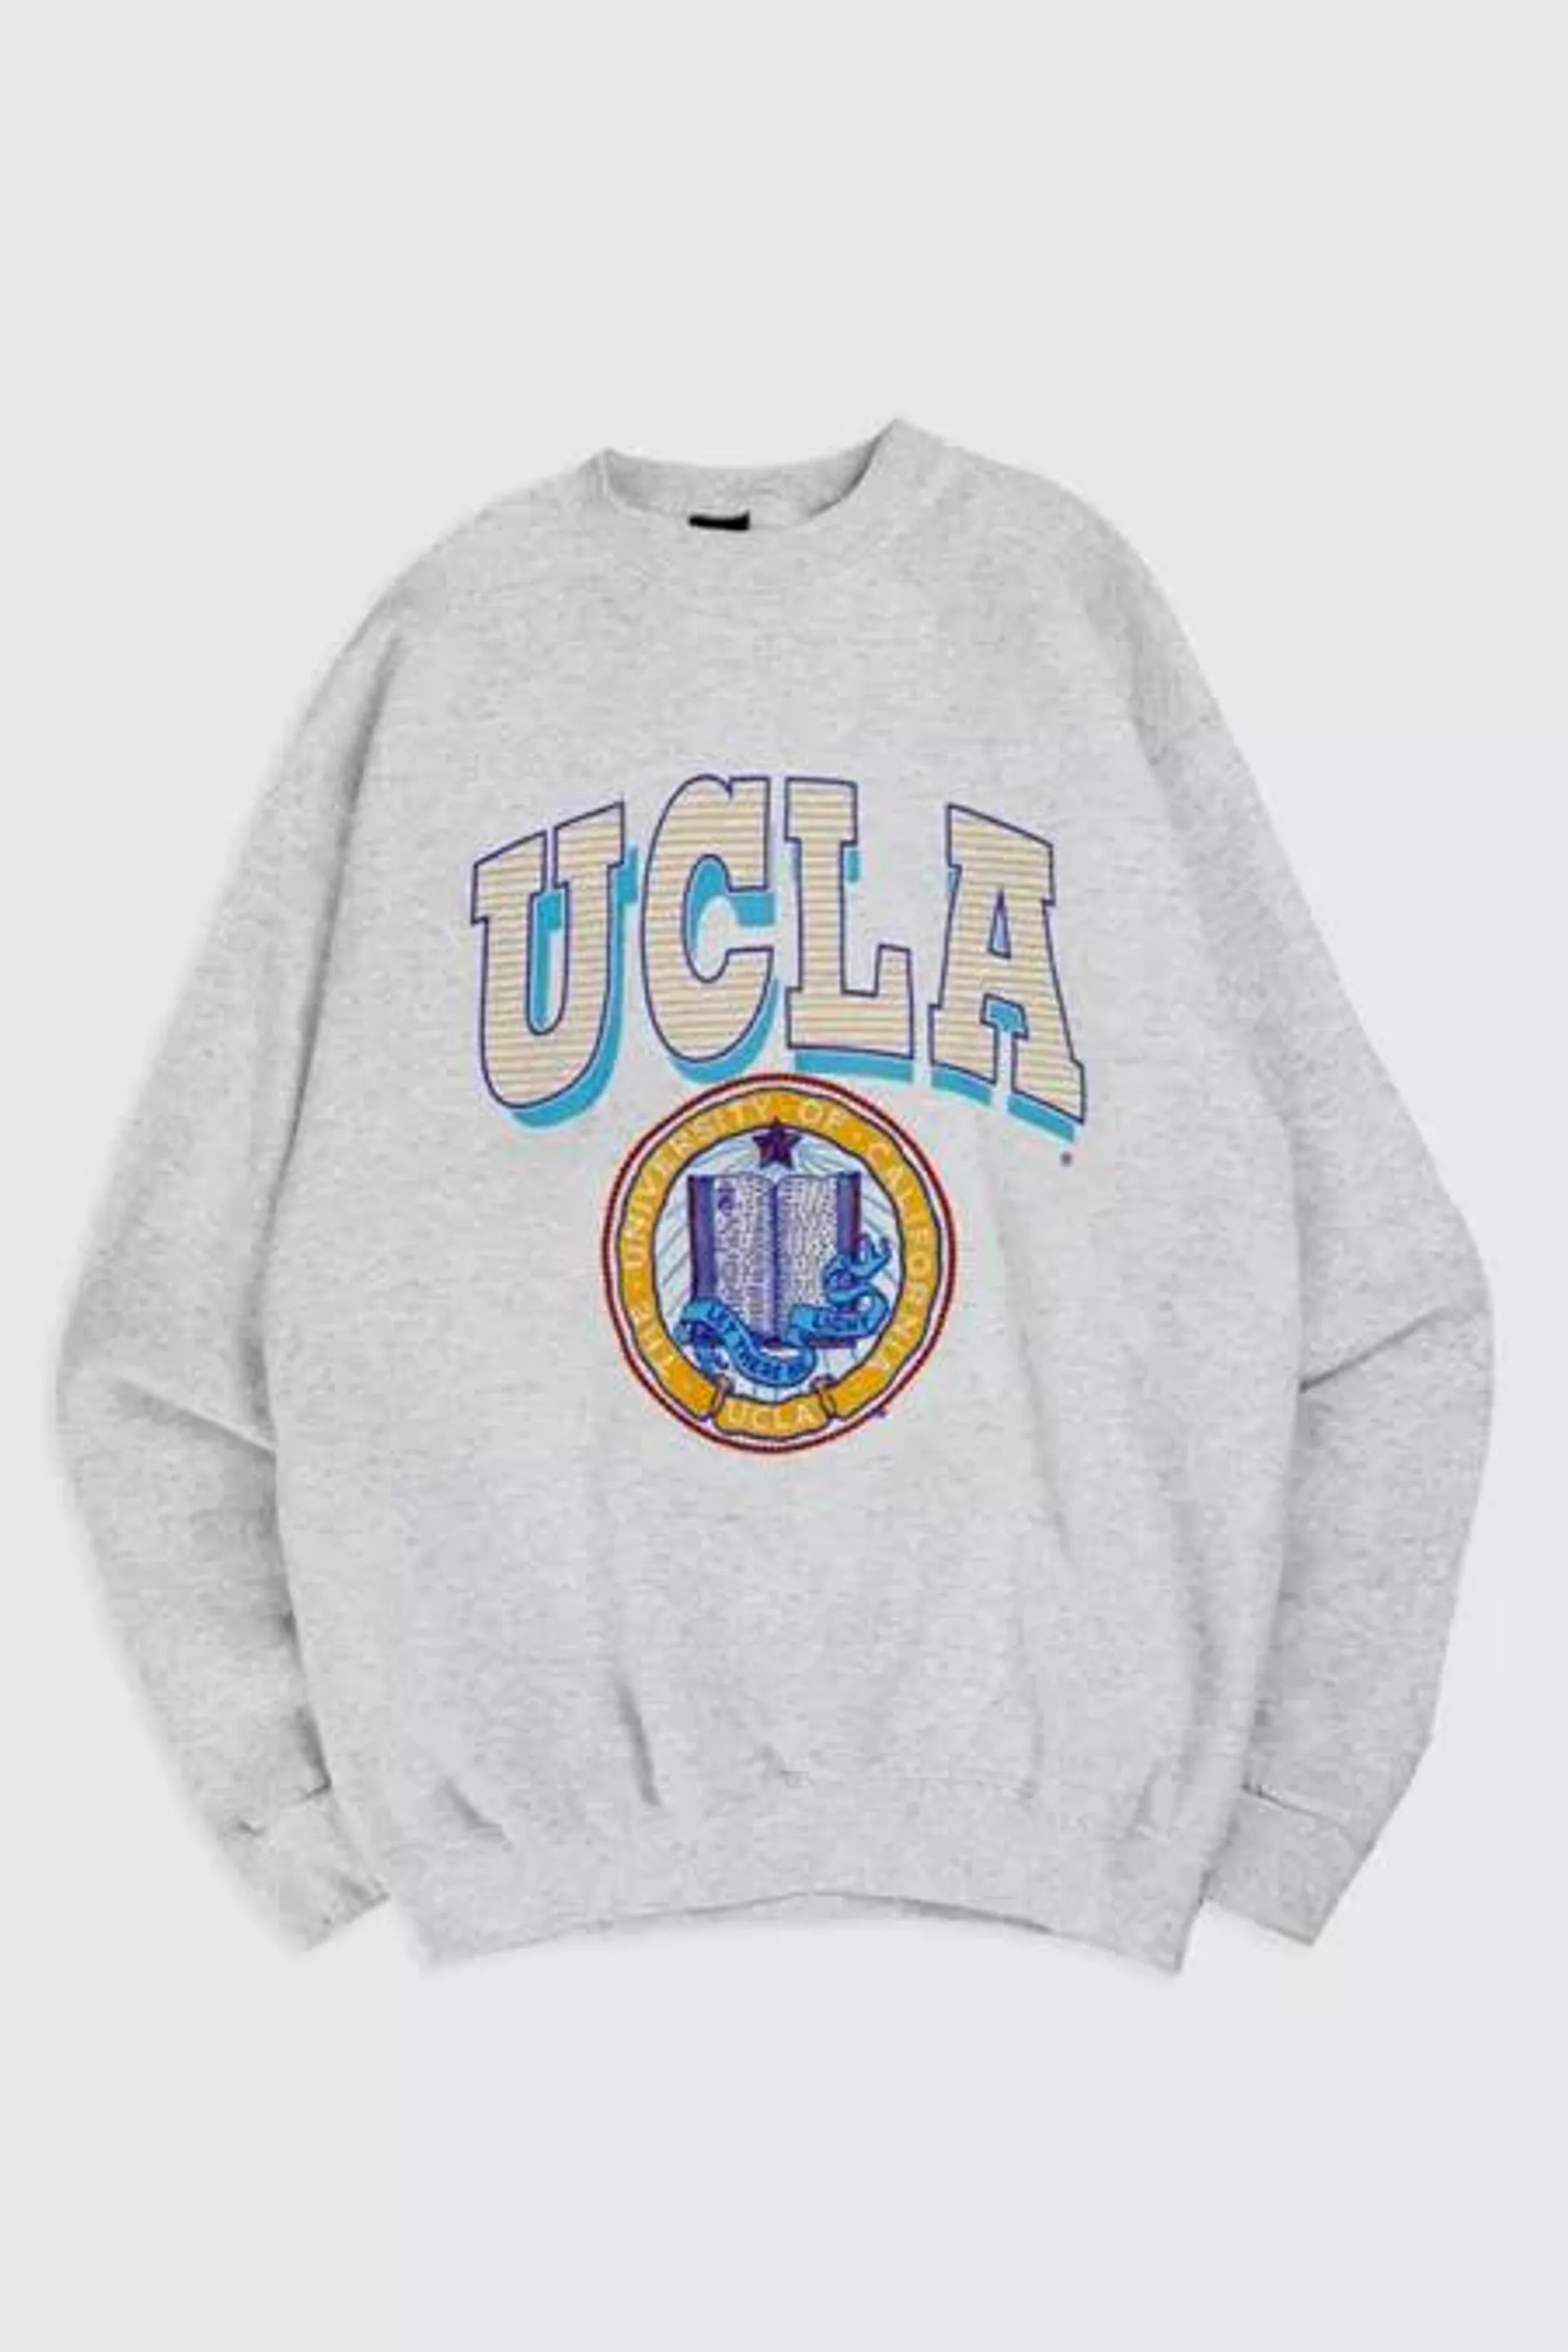 Vintage UCLA Sweatshirt 006